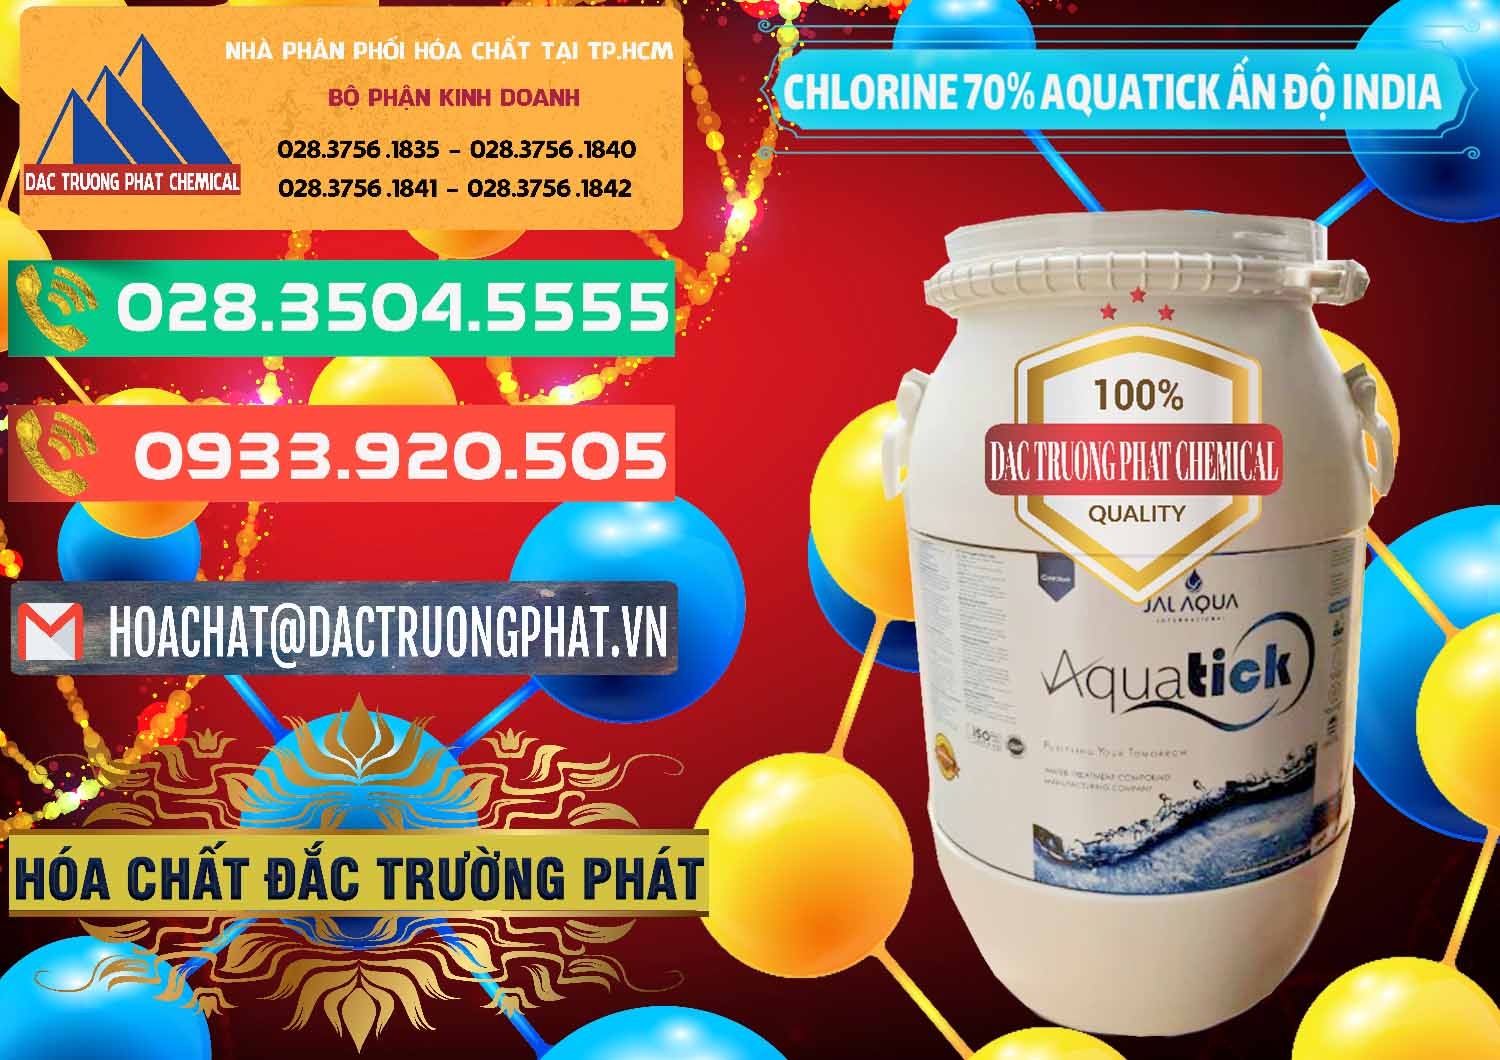 Nơi cung cấp - bán Chlorine – Clorin 70% Aquatick Jal Aqua Ấn Độ India - 0215 - Nhà cung cấp và kinh doanh hóa chất tại TP.HCM - congtyhoachat.com.vn